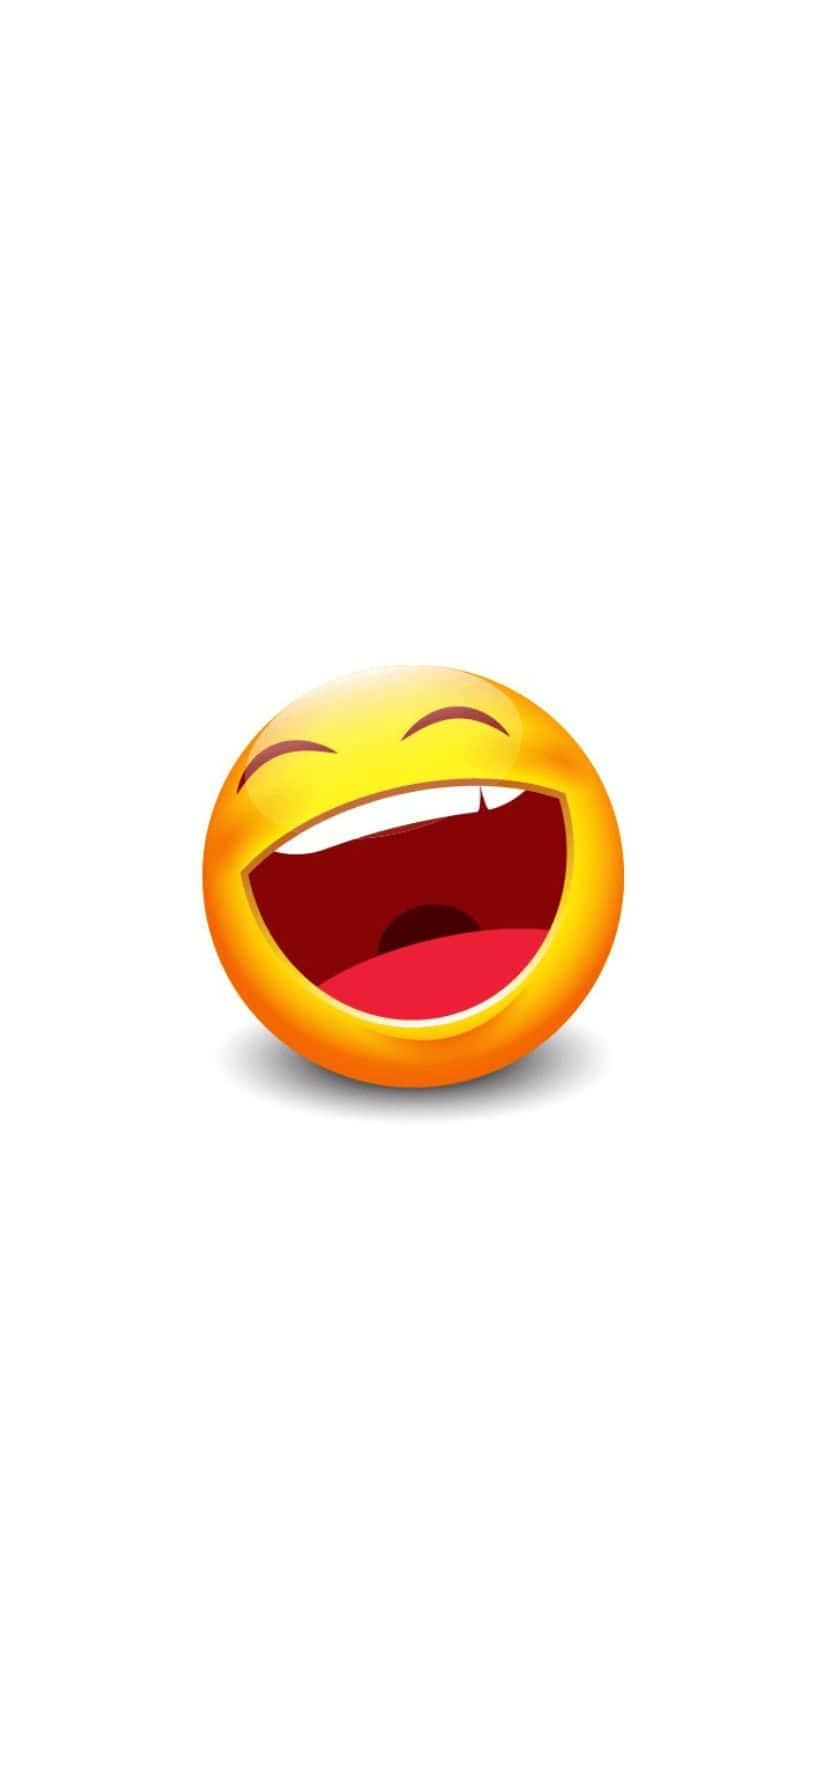 Laughing Emoji Fun Expression.jpg Wallpaper